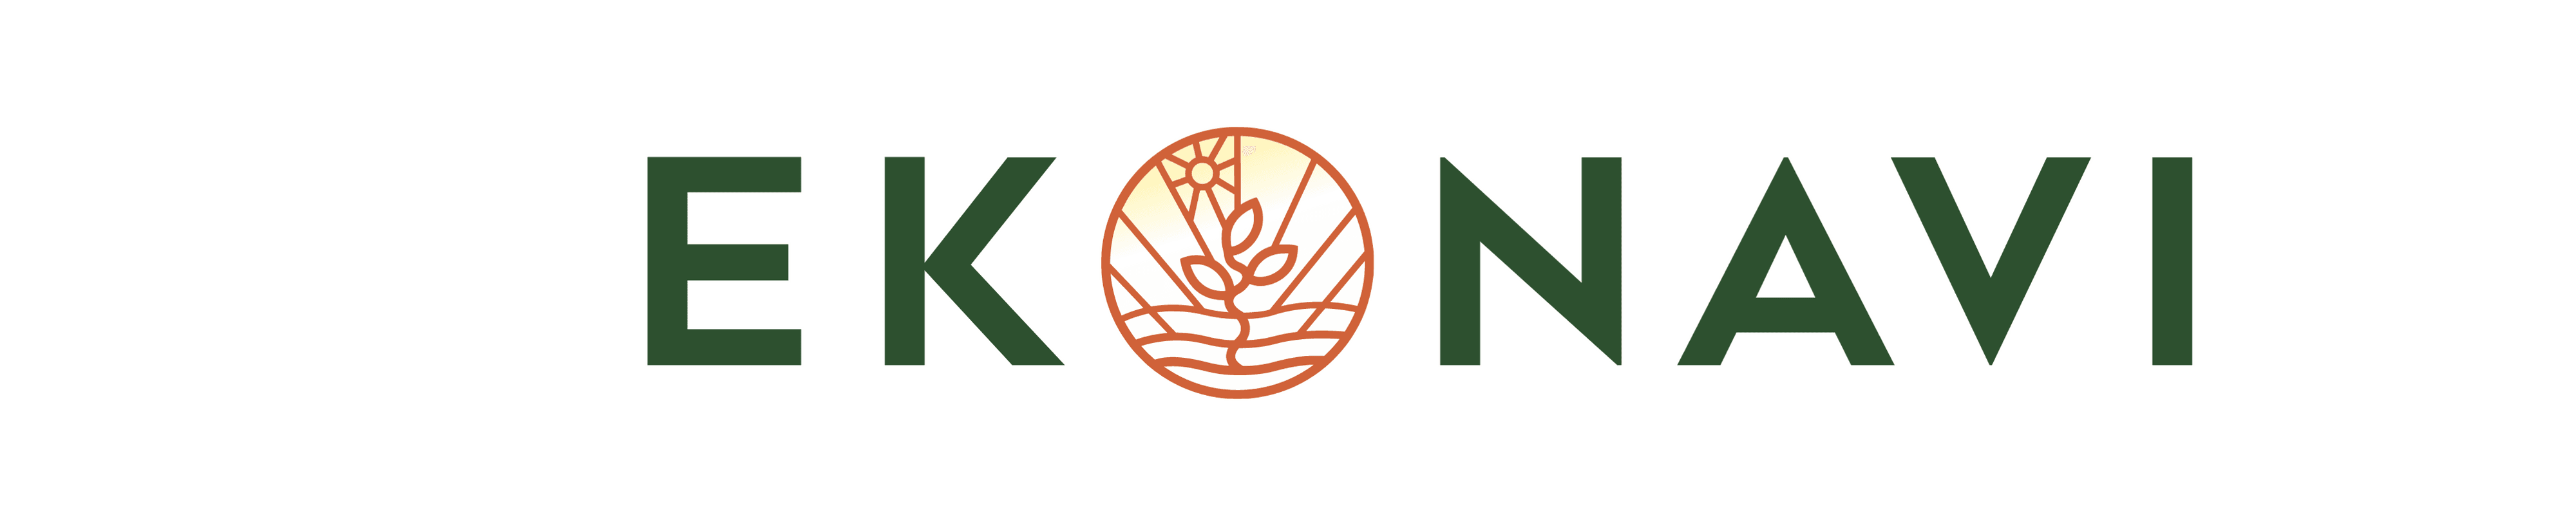 Ekonavi banner